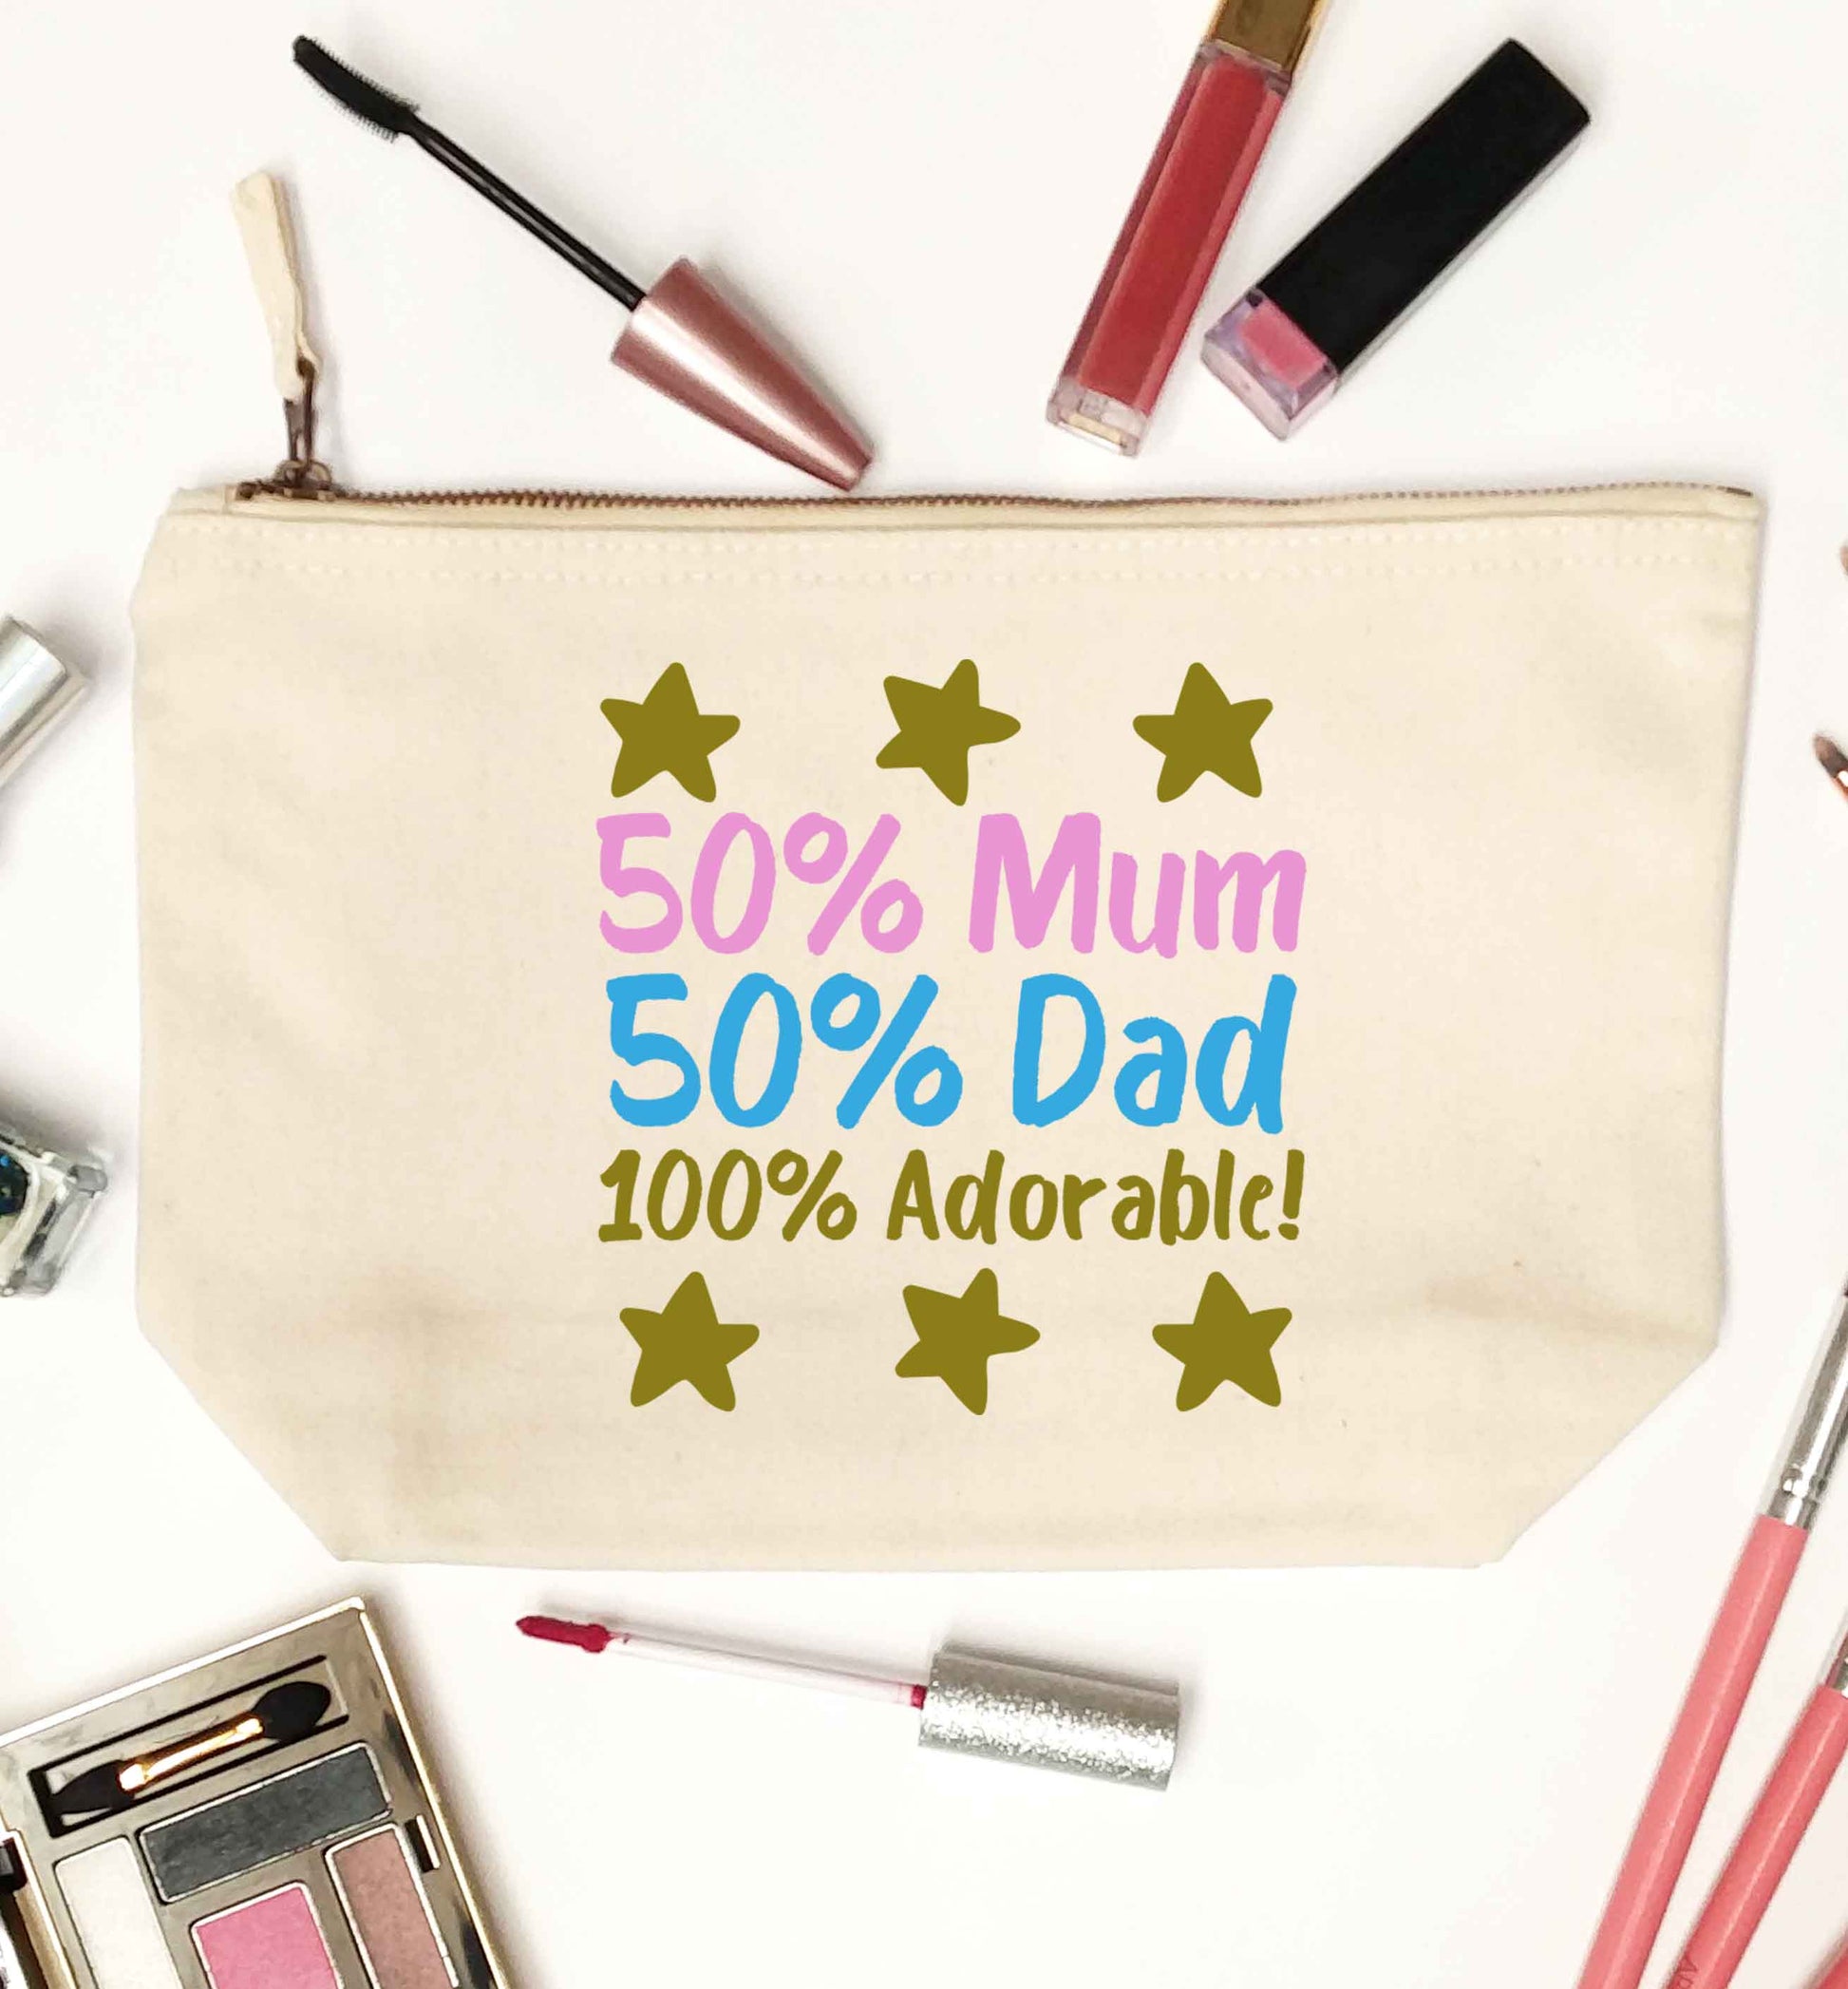 50% mum 50% dad 100% adorable natural makeup bag